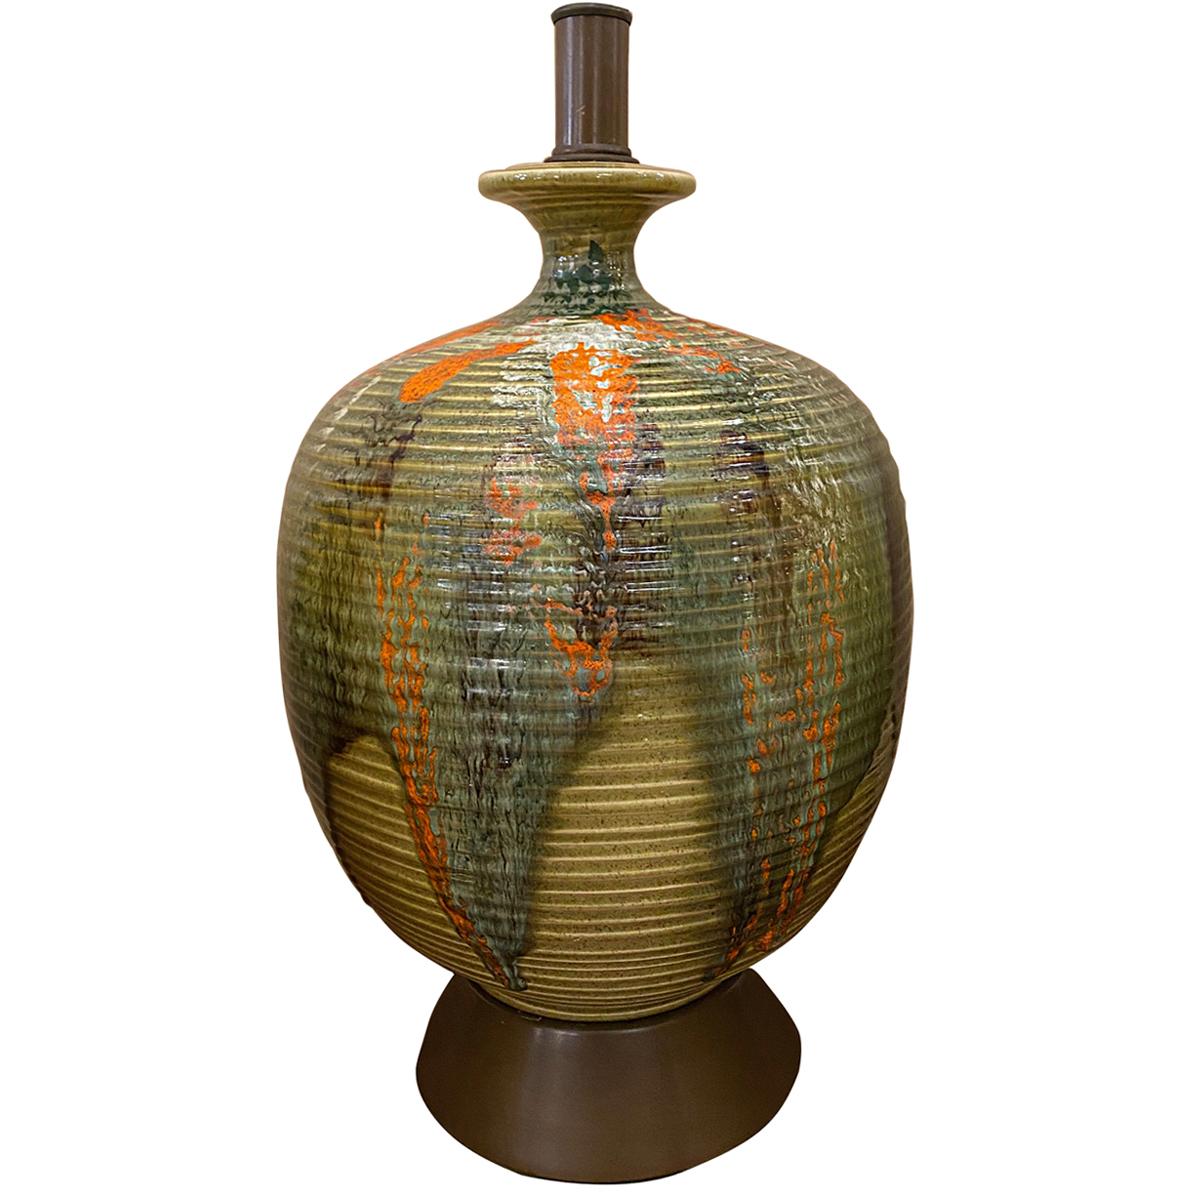 Lampe de table unique en céramique émaillée et texturée, datant des années 1960, avec base en bois.

Mesures :
Hauteur du corps : 18
Diamètre : 11